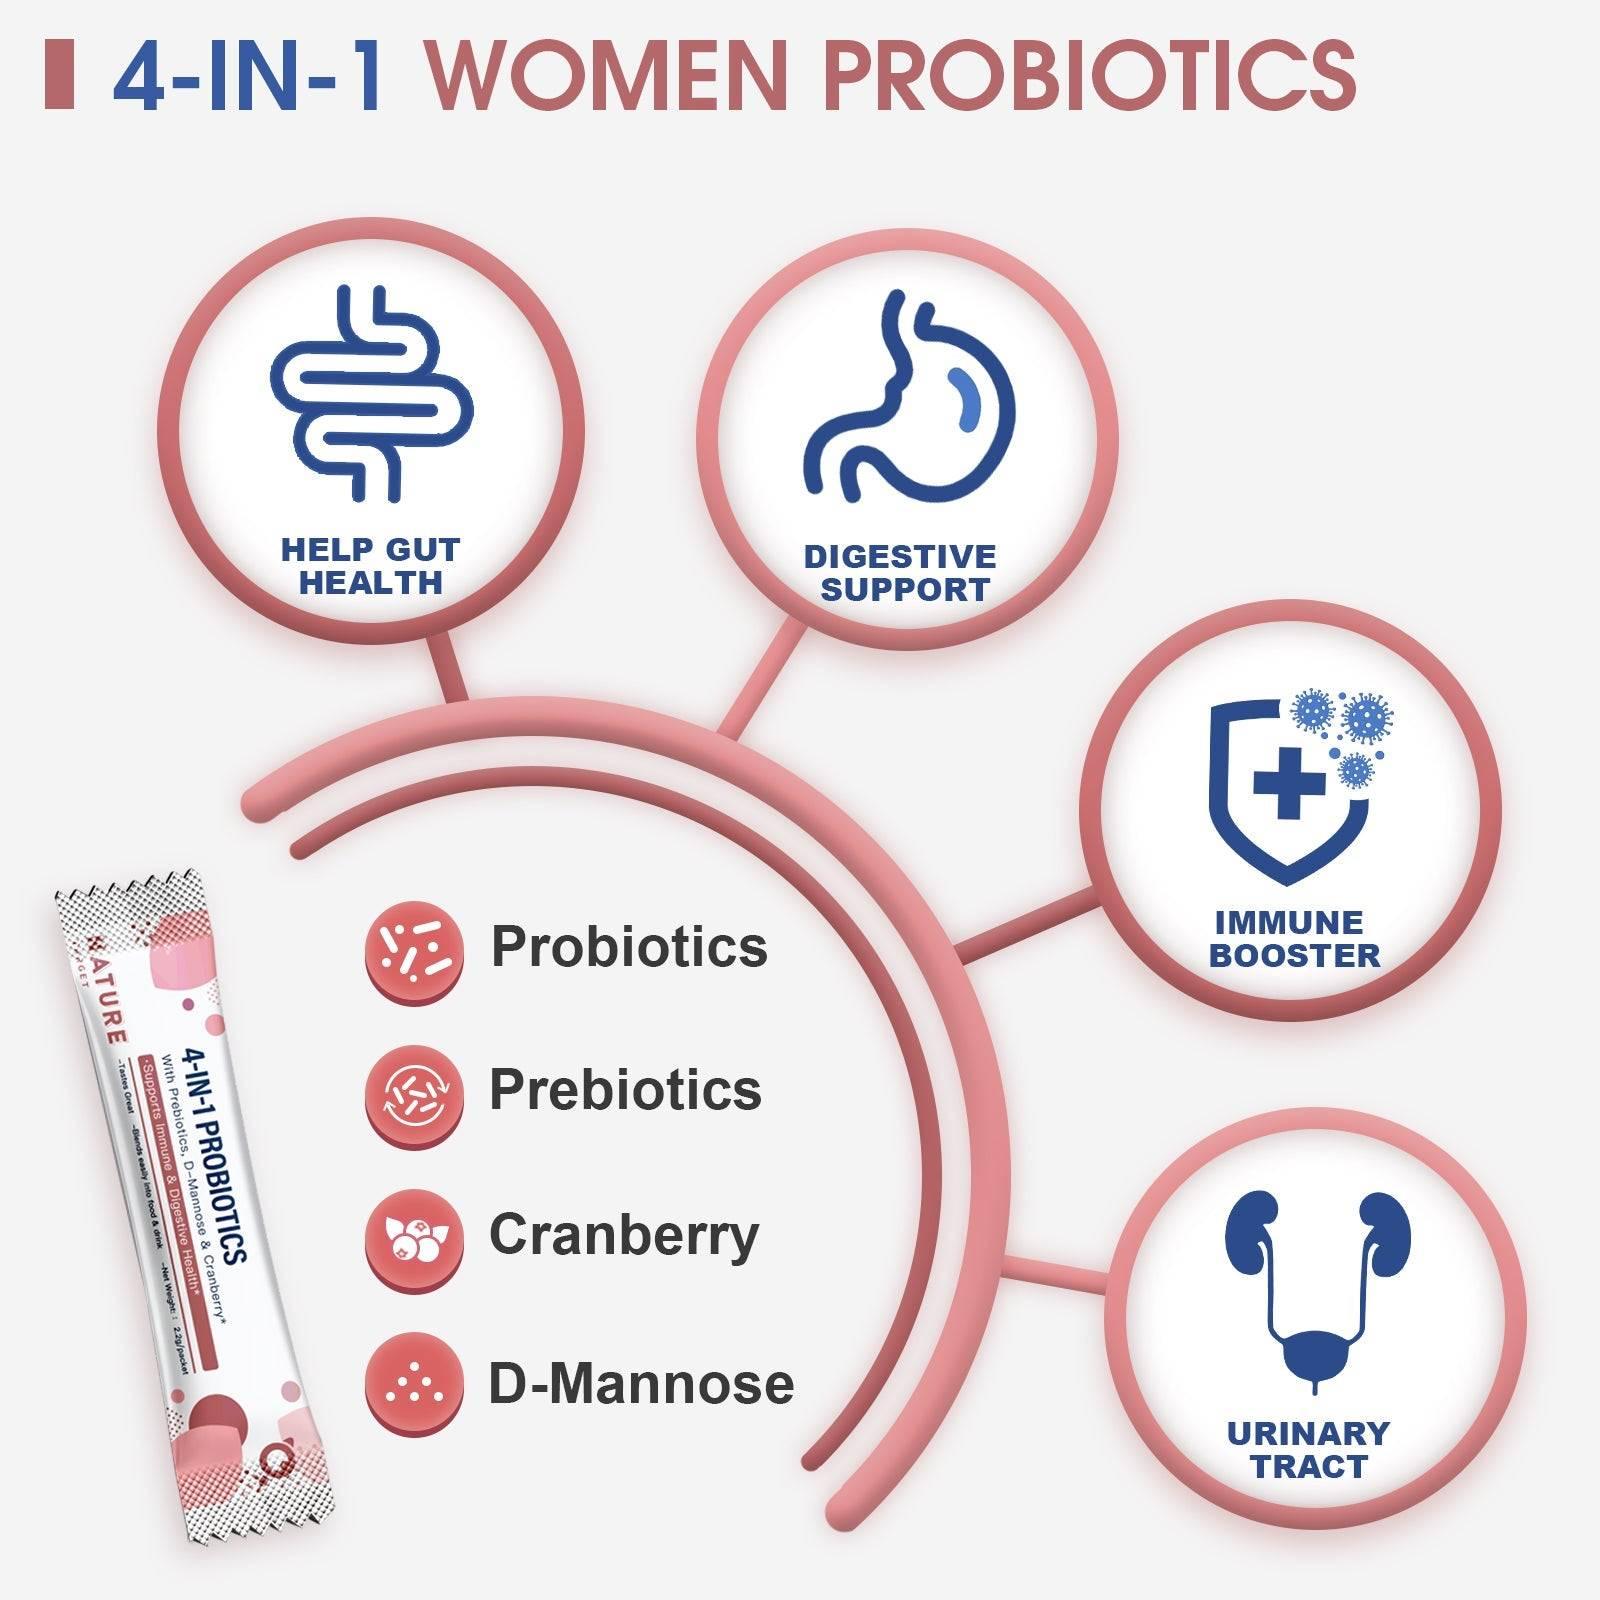 4-IN-1 WOMEN PROBIOTICS